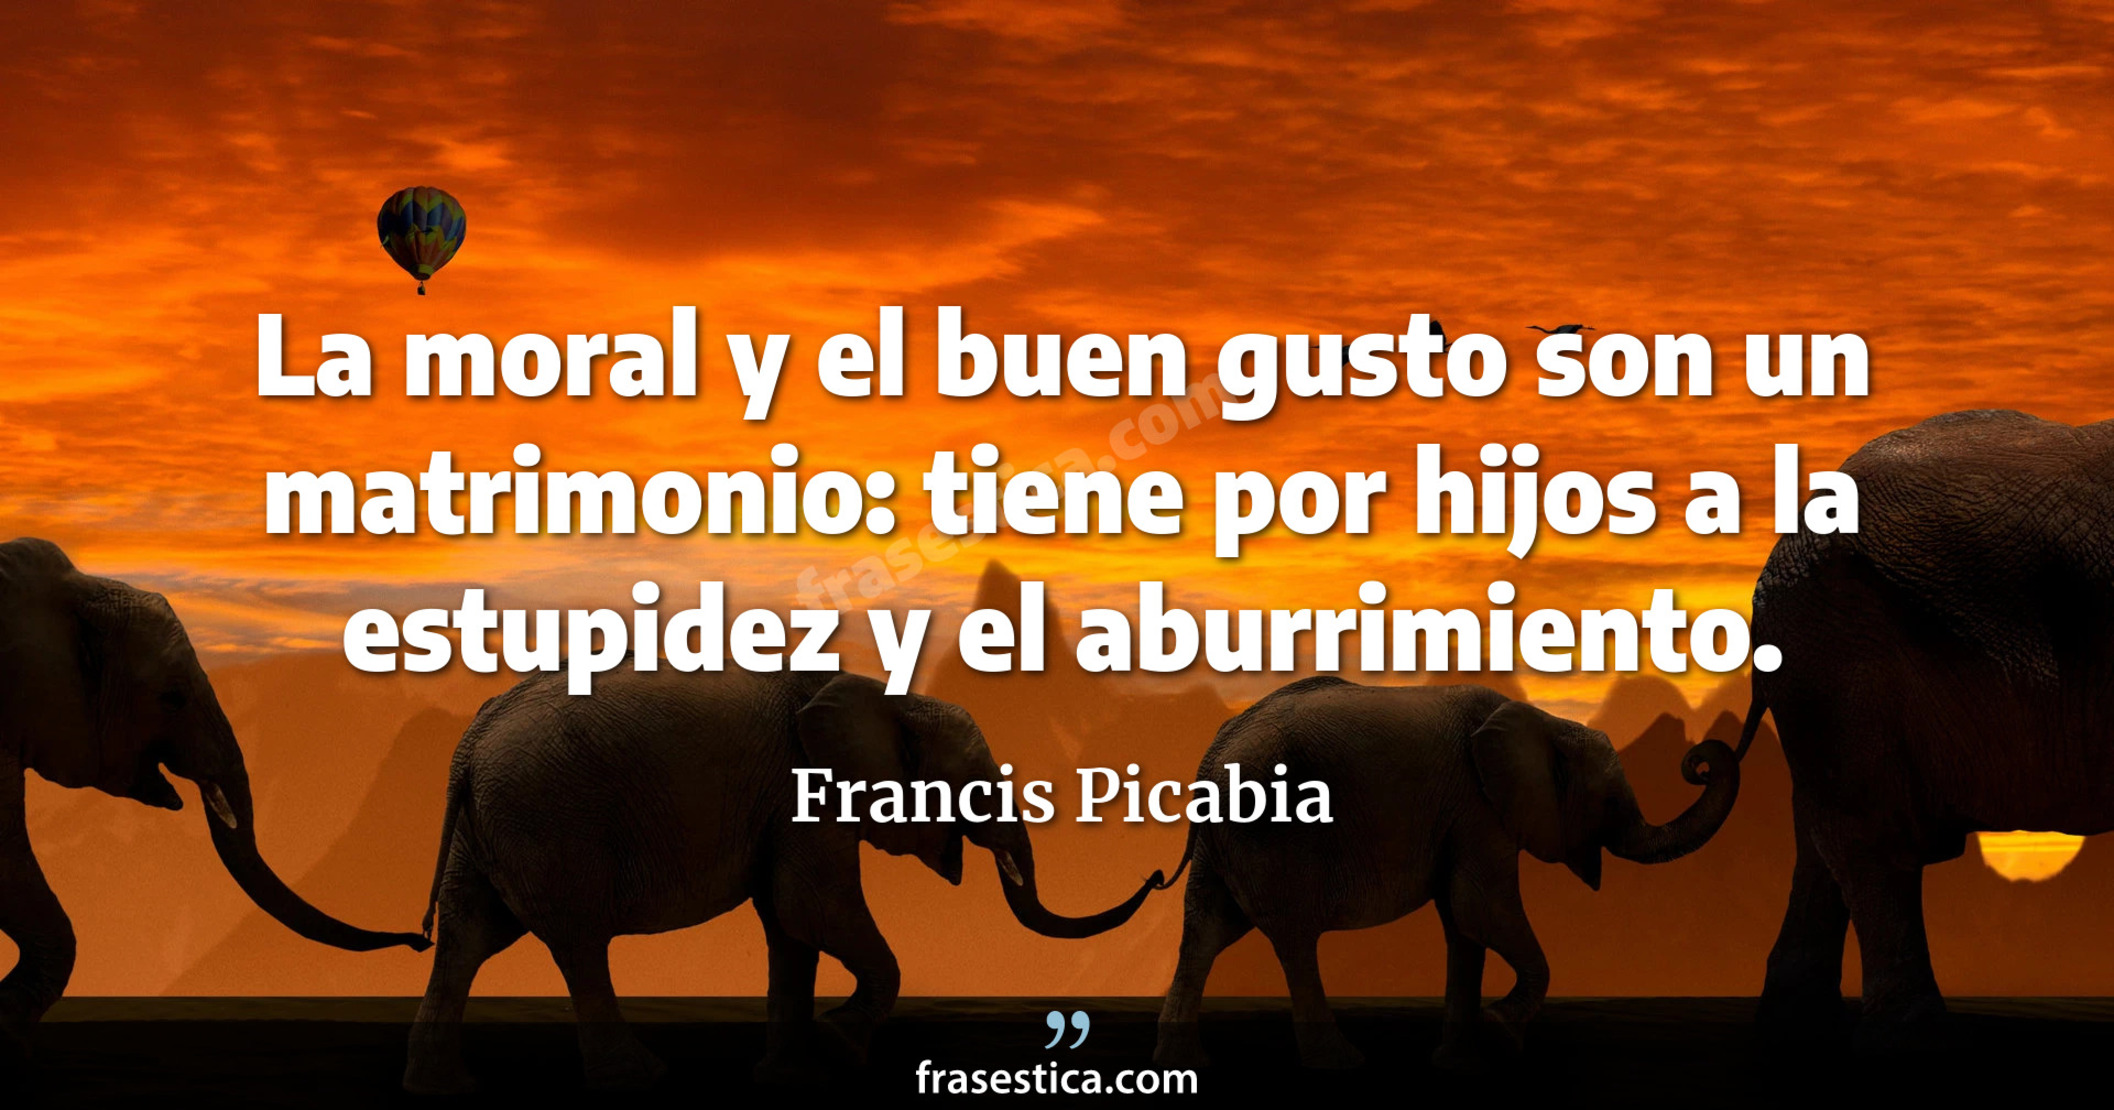 La moral y el buen gusto son un matrimonio: tiene por hijos a la estupidez y el aburrimiento. - Francis Picabia